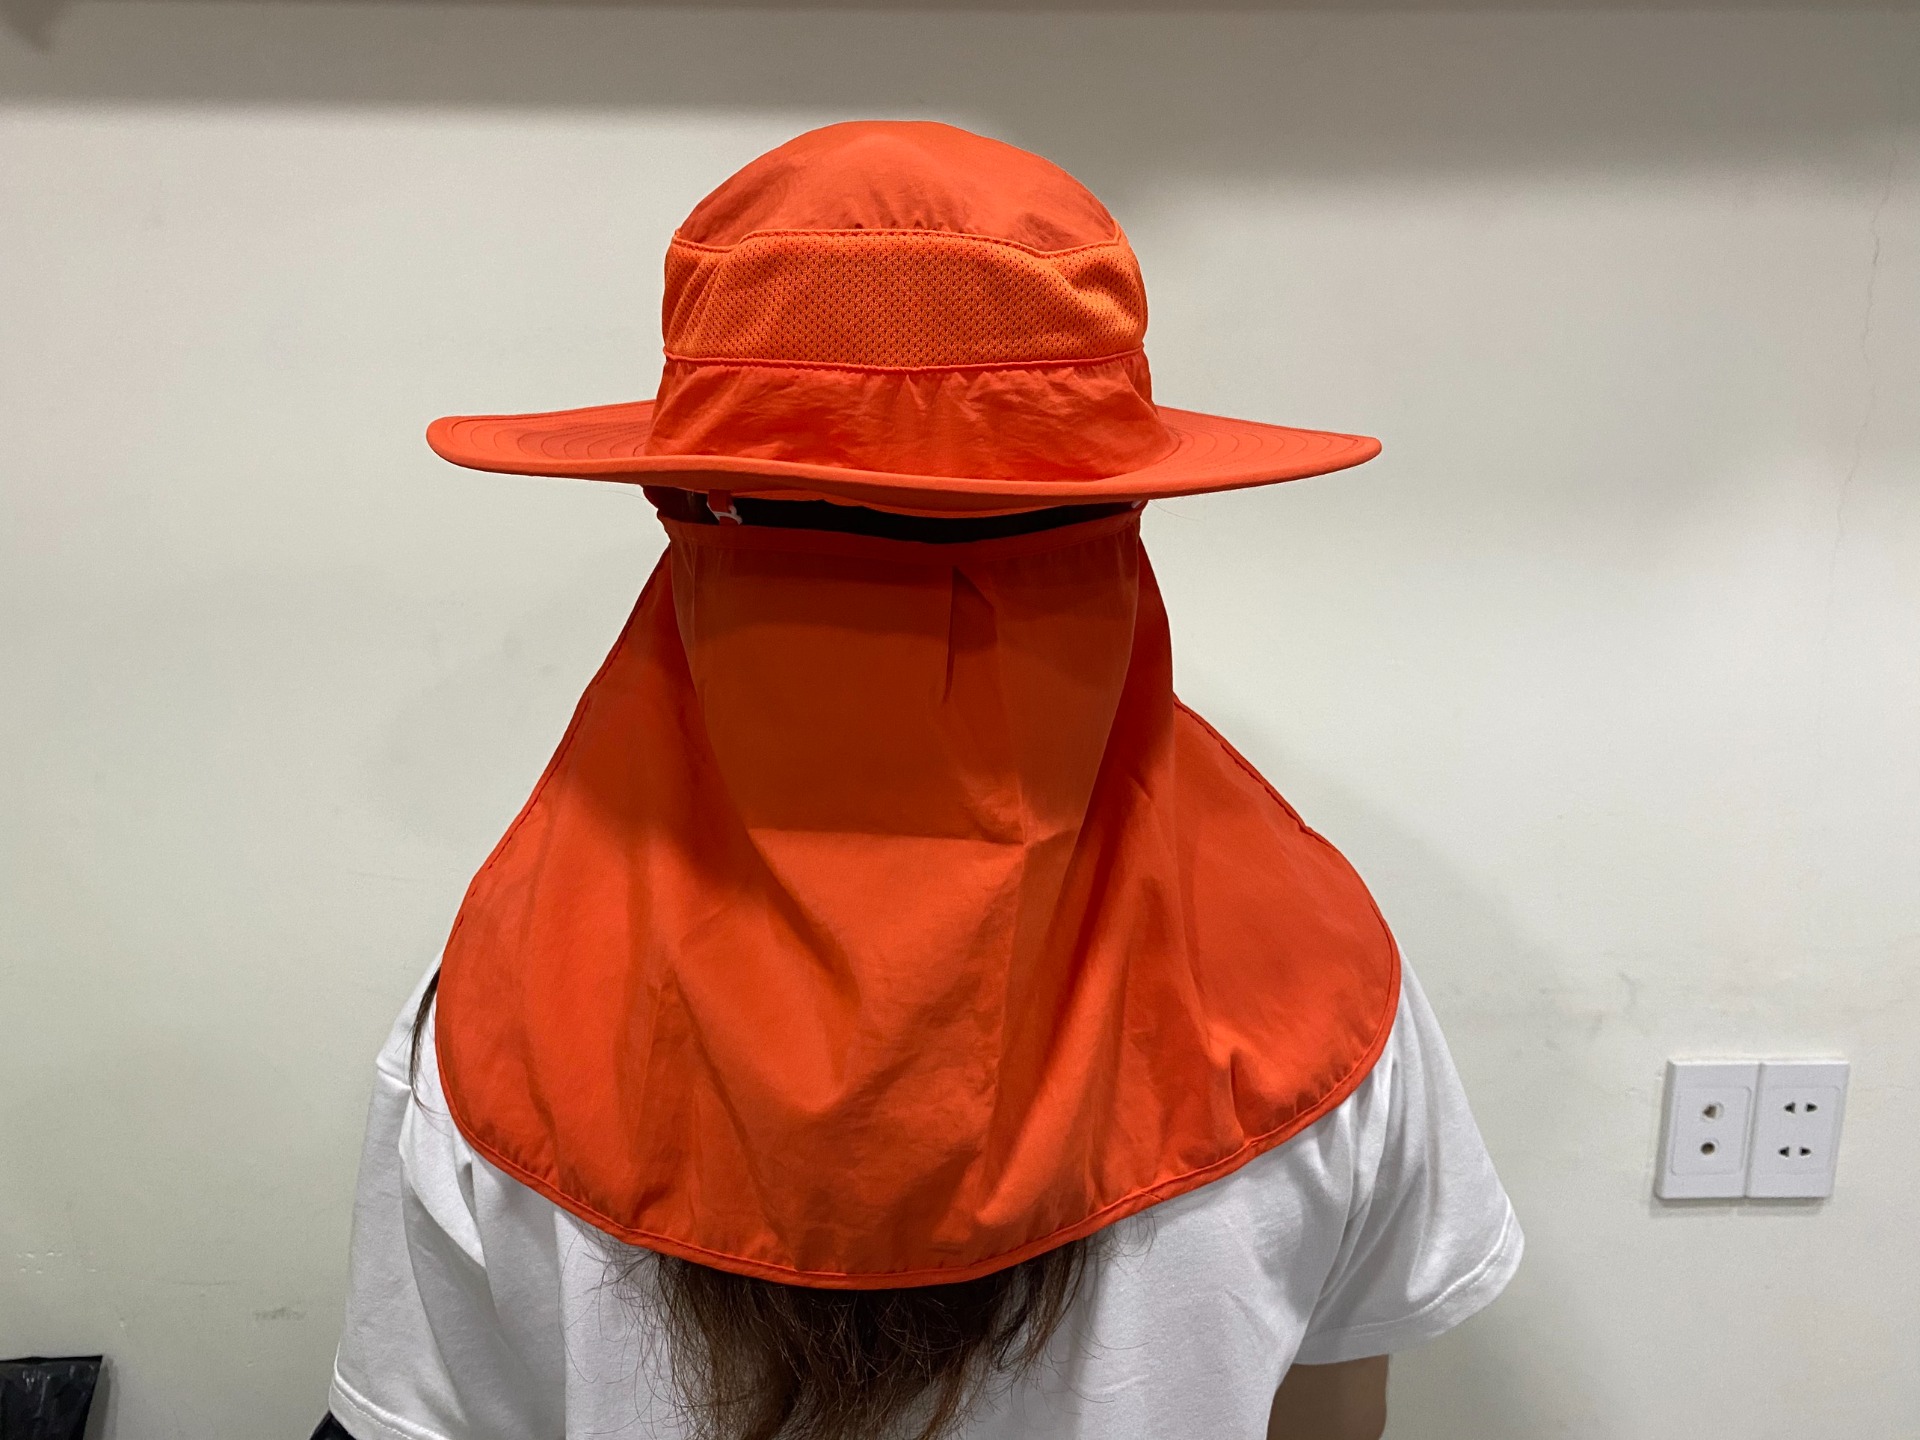 May mũ chống nắng giá rẻ tại TPHCM